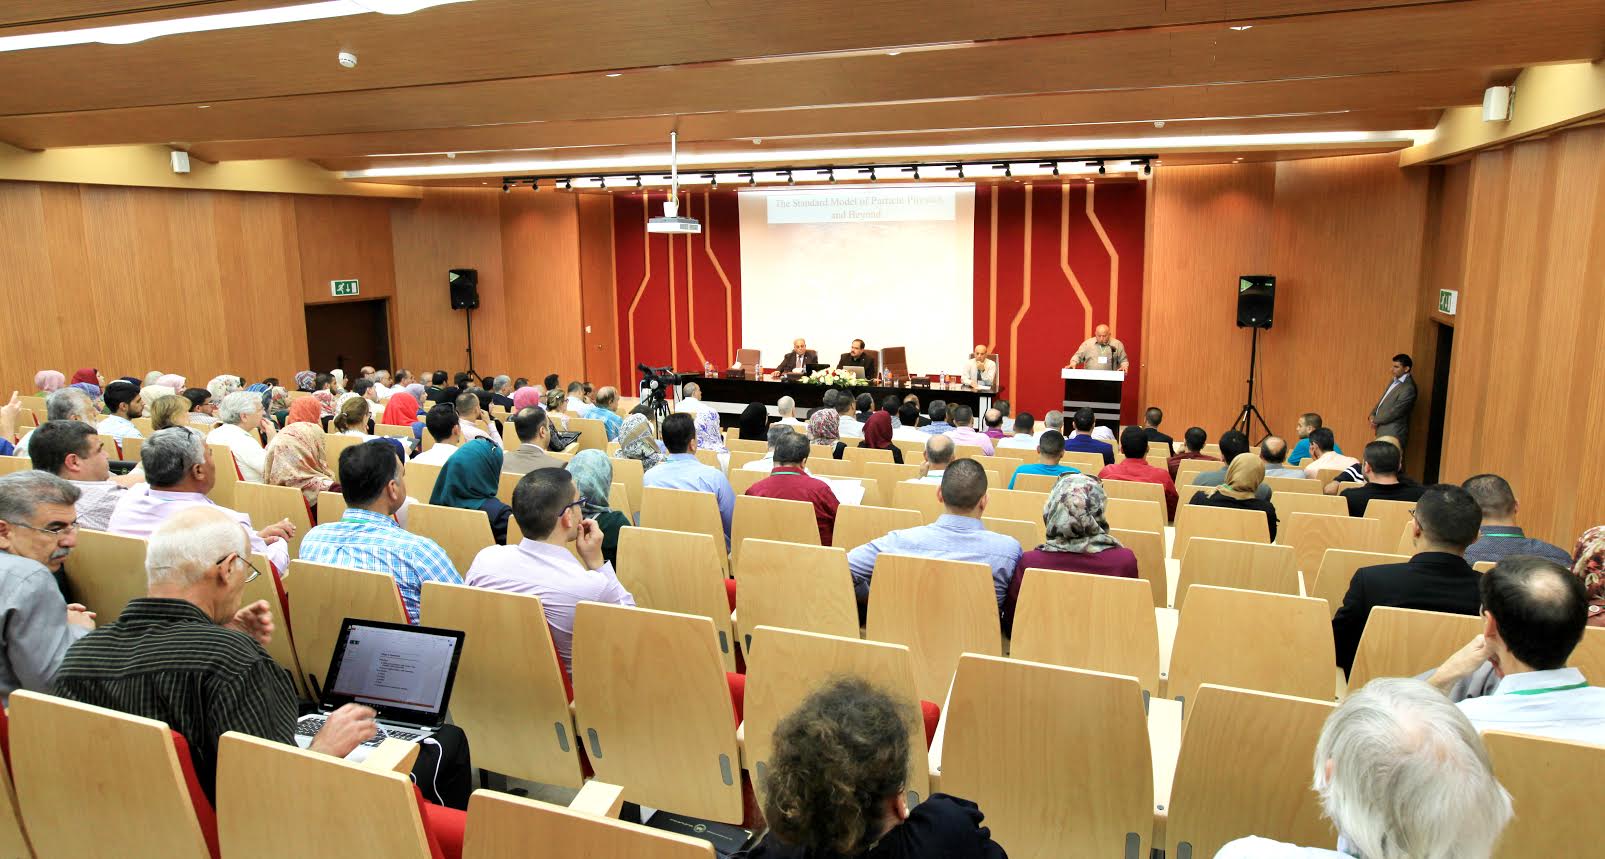 فعاليات المؤتمر الفلسطيني الخامس حول الاتجاهات الحديثة في الفيزياء والرياضيات